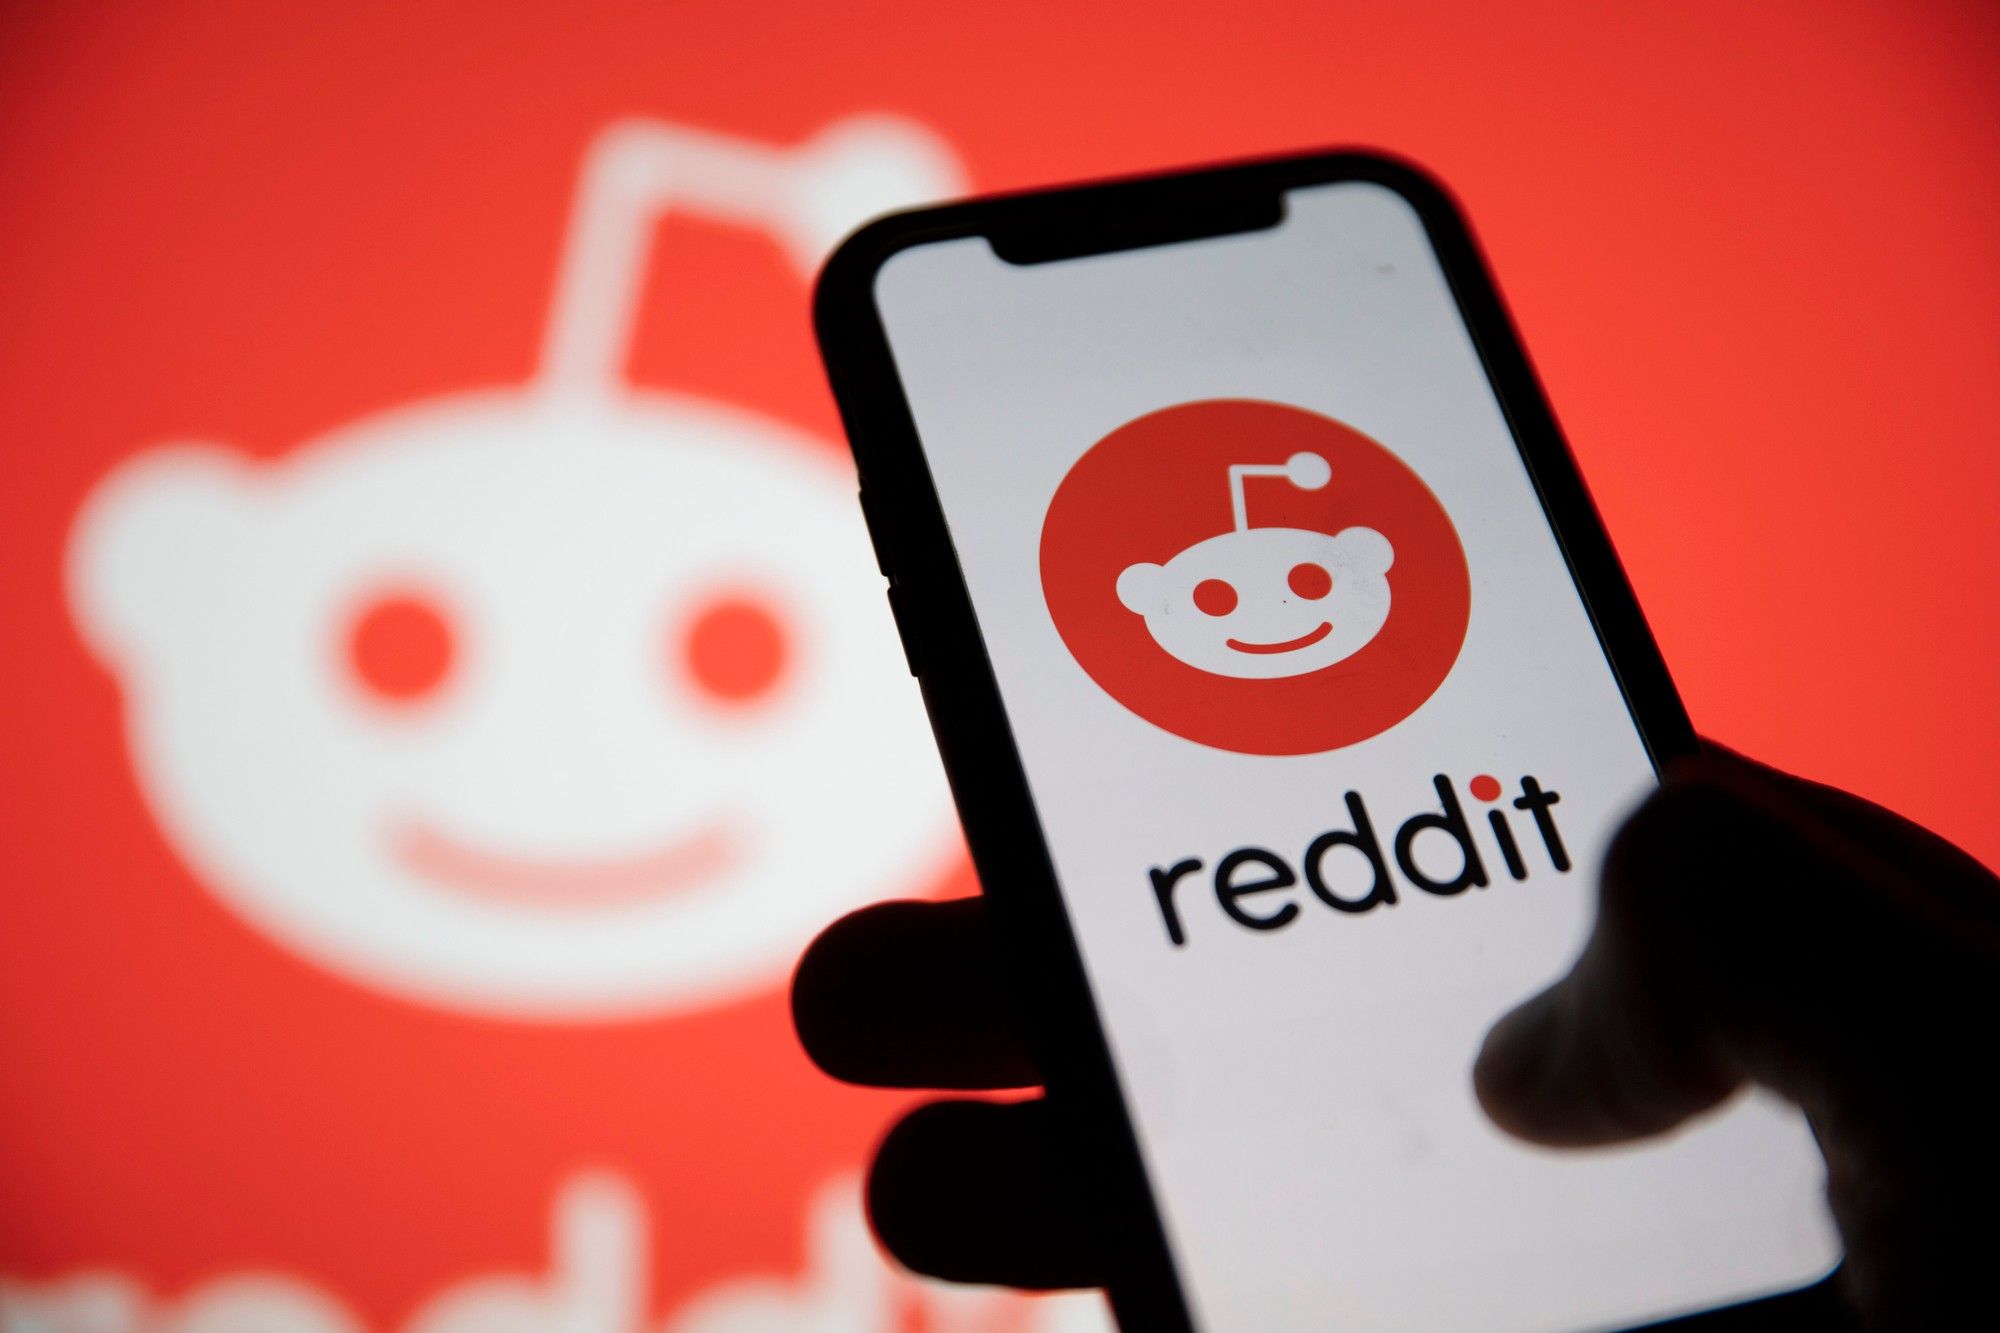 Reddit profits off child porn, a lawsuit claims.